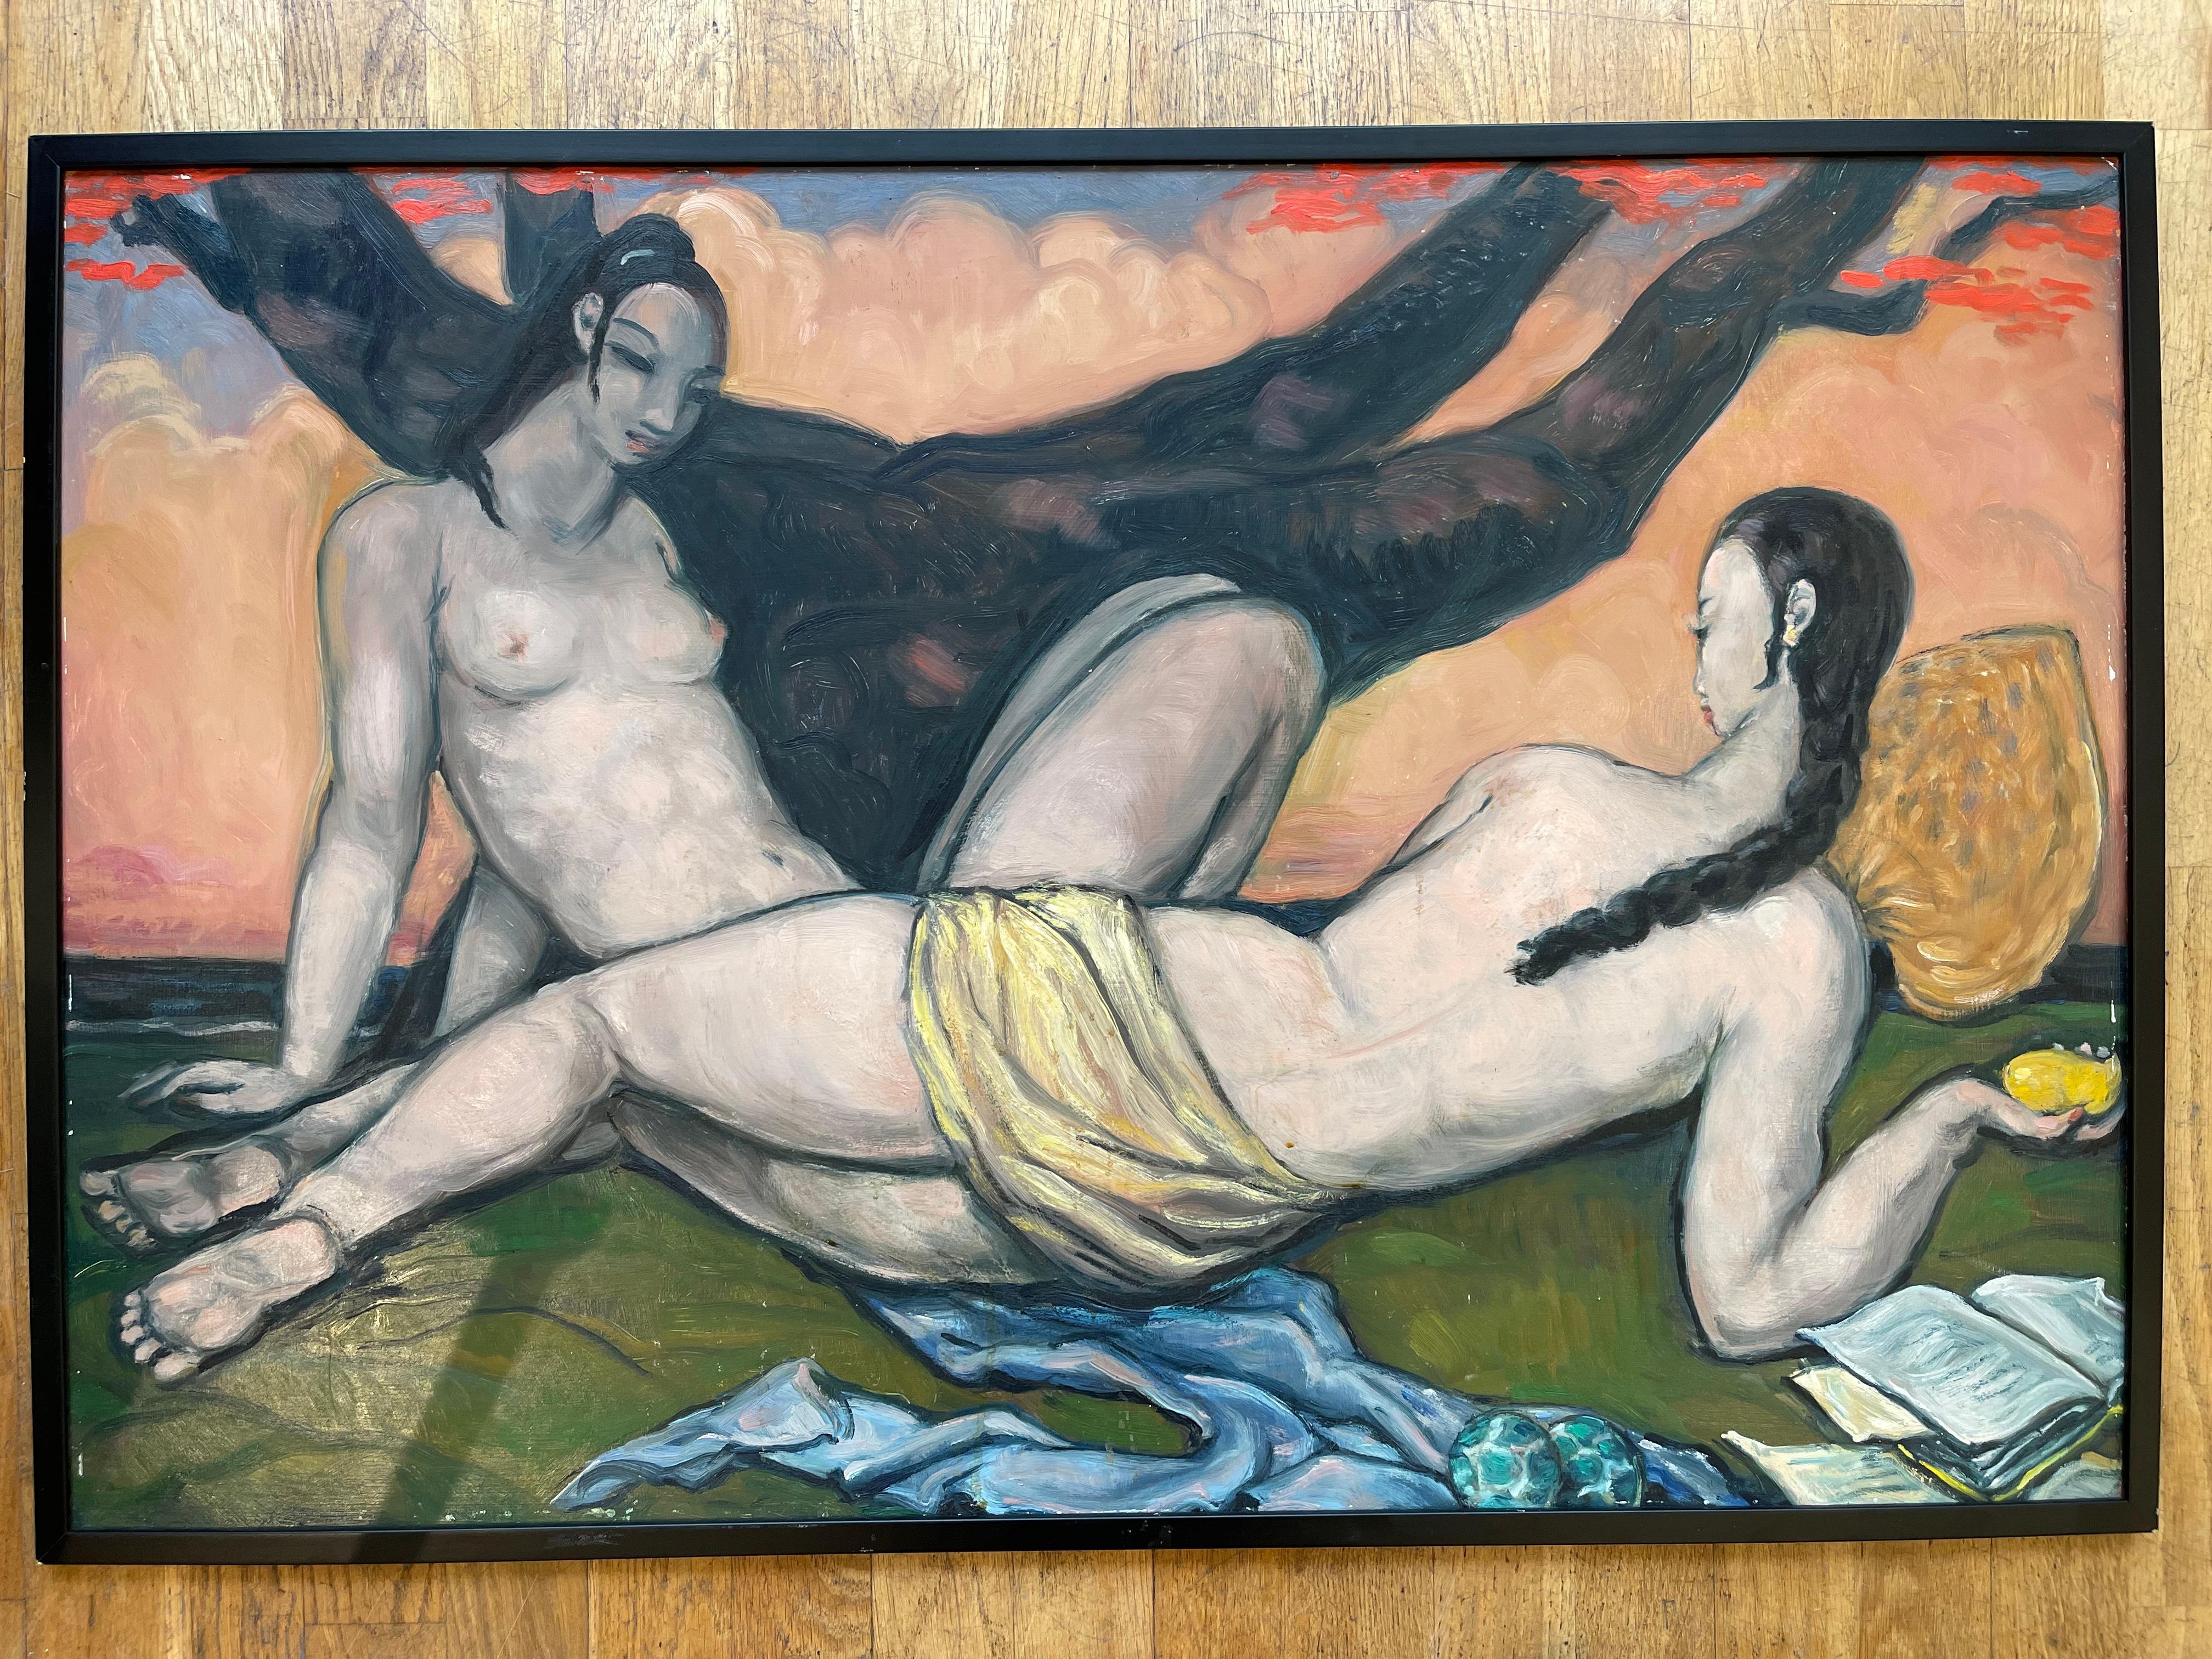 Superbe peinture à l'huile sur carton d'André Maire (1898-1984) représentant deux dames vietnamiennes sous des arbres flamboyants. Les peintures à l'huile d'André Maire sont beaucoup plus rares que ses gouaches sur papier. Celui-ci est également